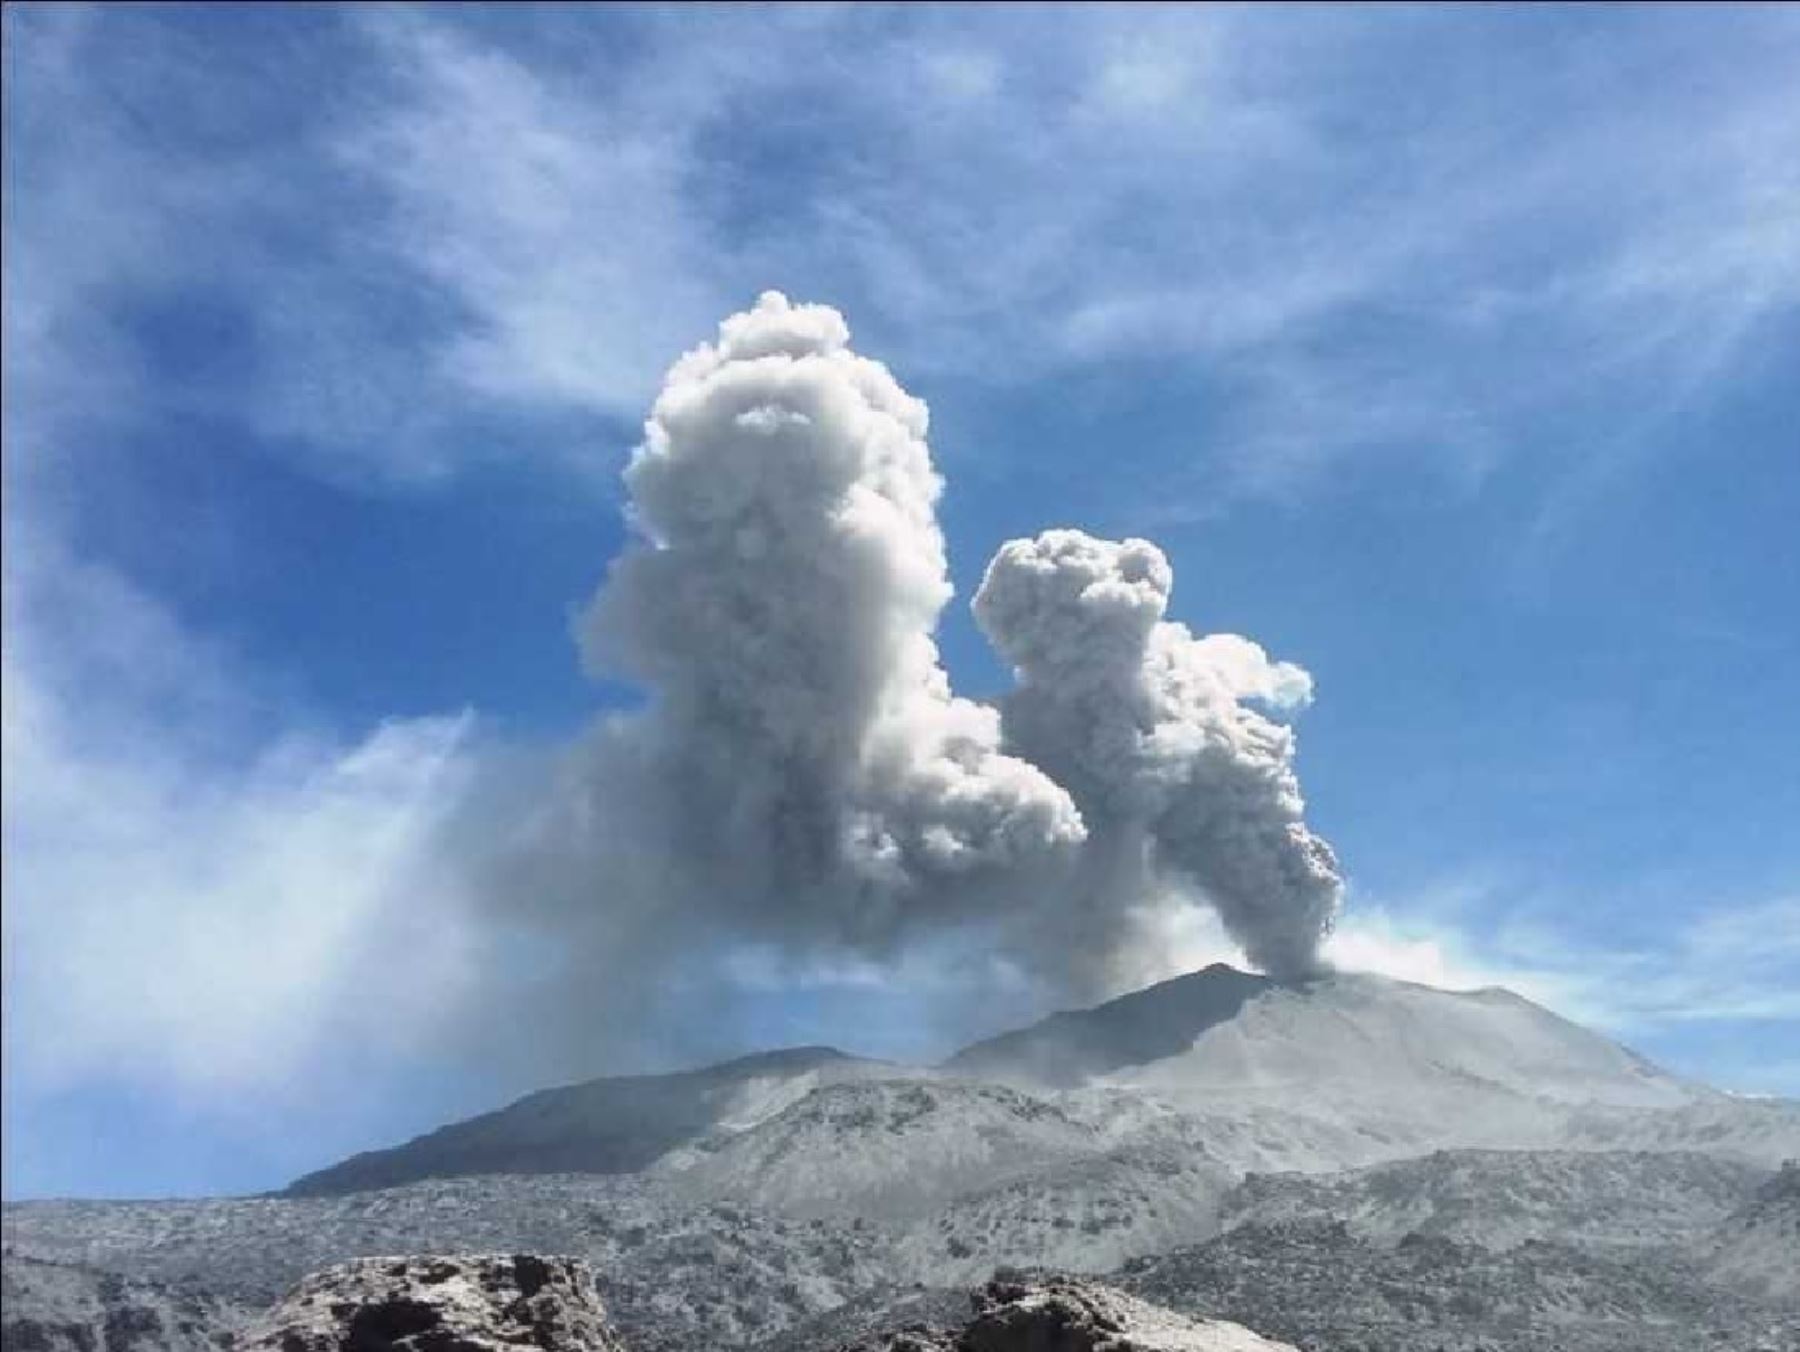 La actividad explosiva del volcán Sabancaya, ubicado en la región Arequipa, se mantiene en niveles moderados, alcanzando un promedio de 25 explosiones por día. ANDINA/Difusión